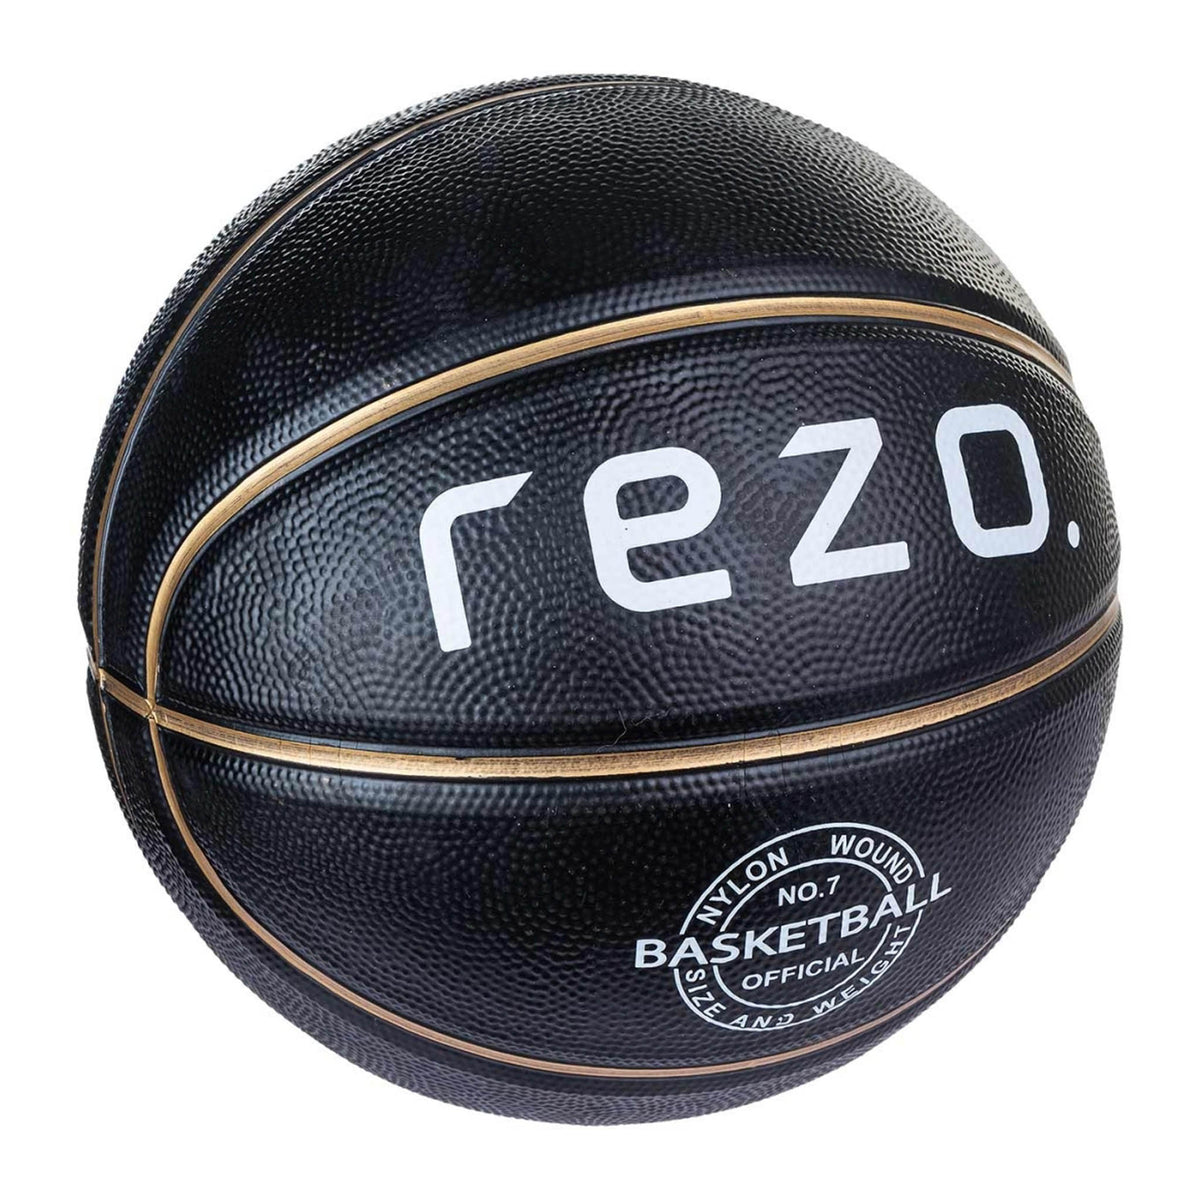 Rezo Basketball - Size 7